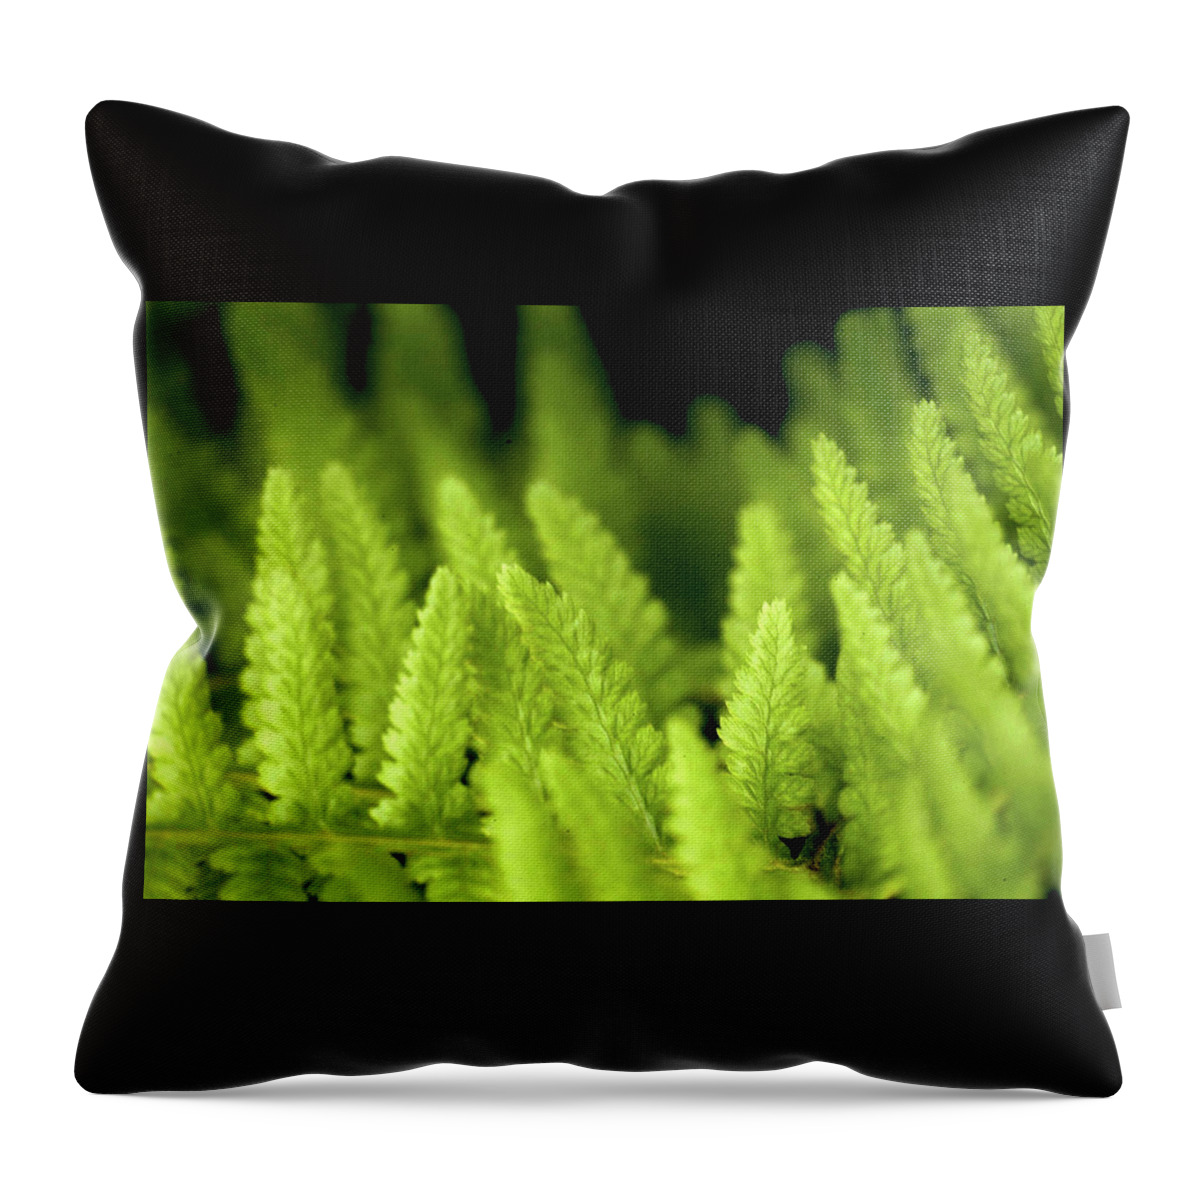 Ferns Throw Pillow featuring the photograph Forest of Ferns by Robert Dann